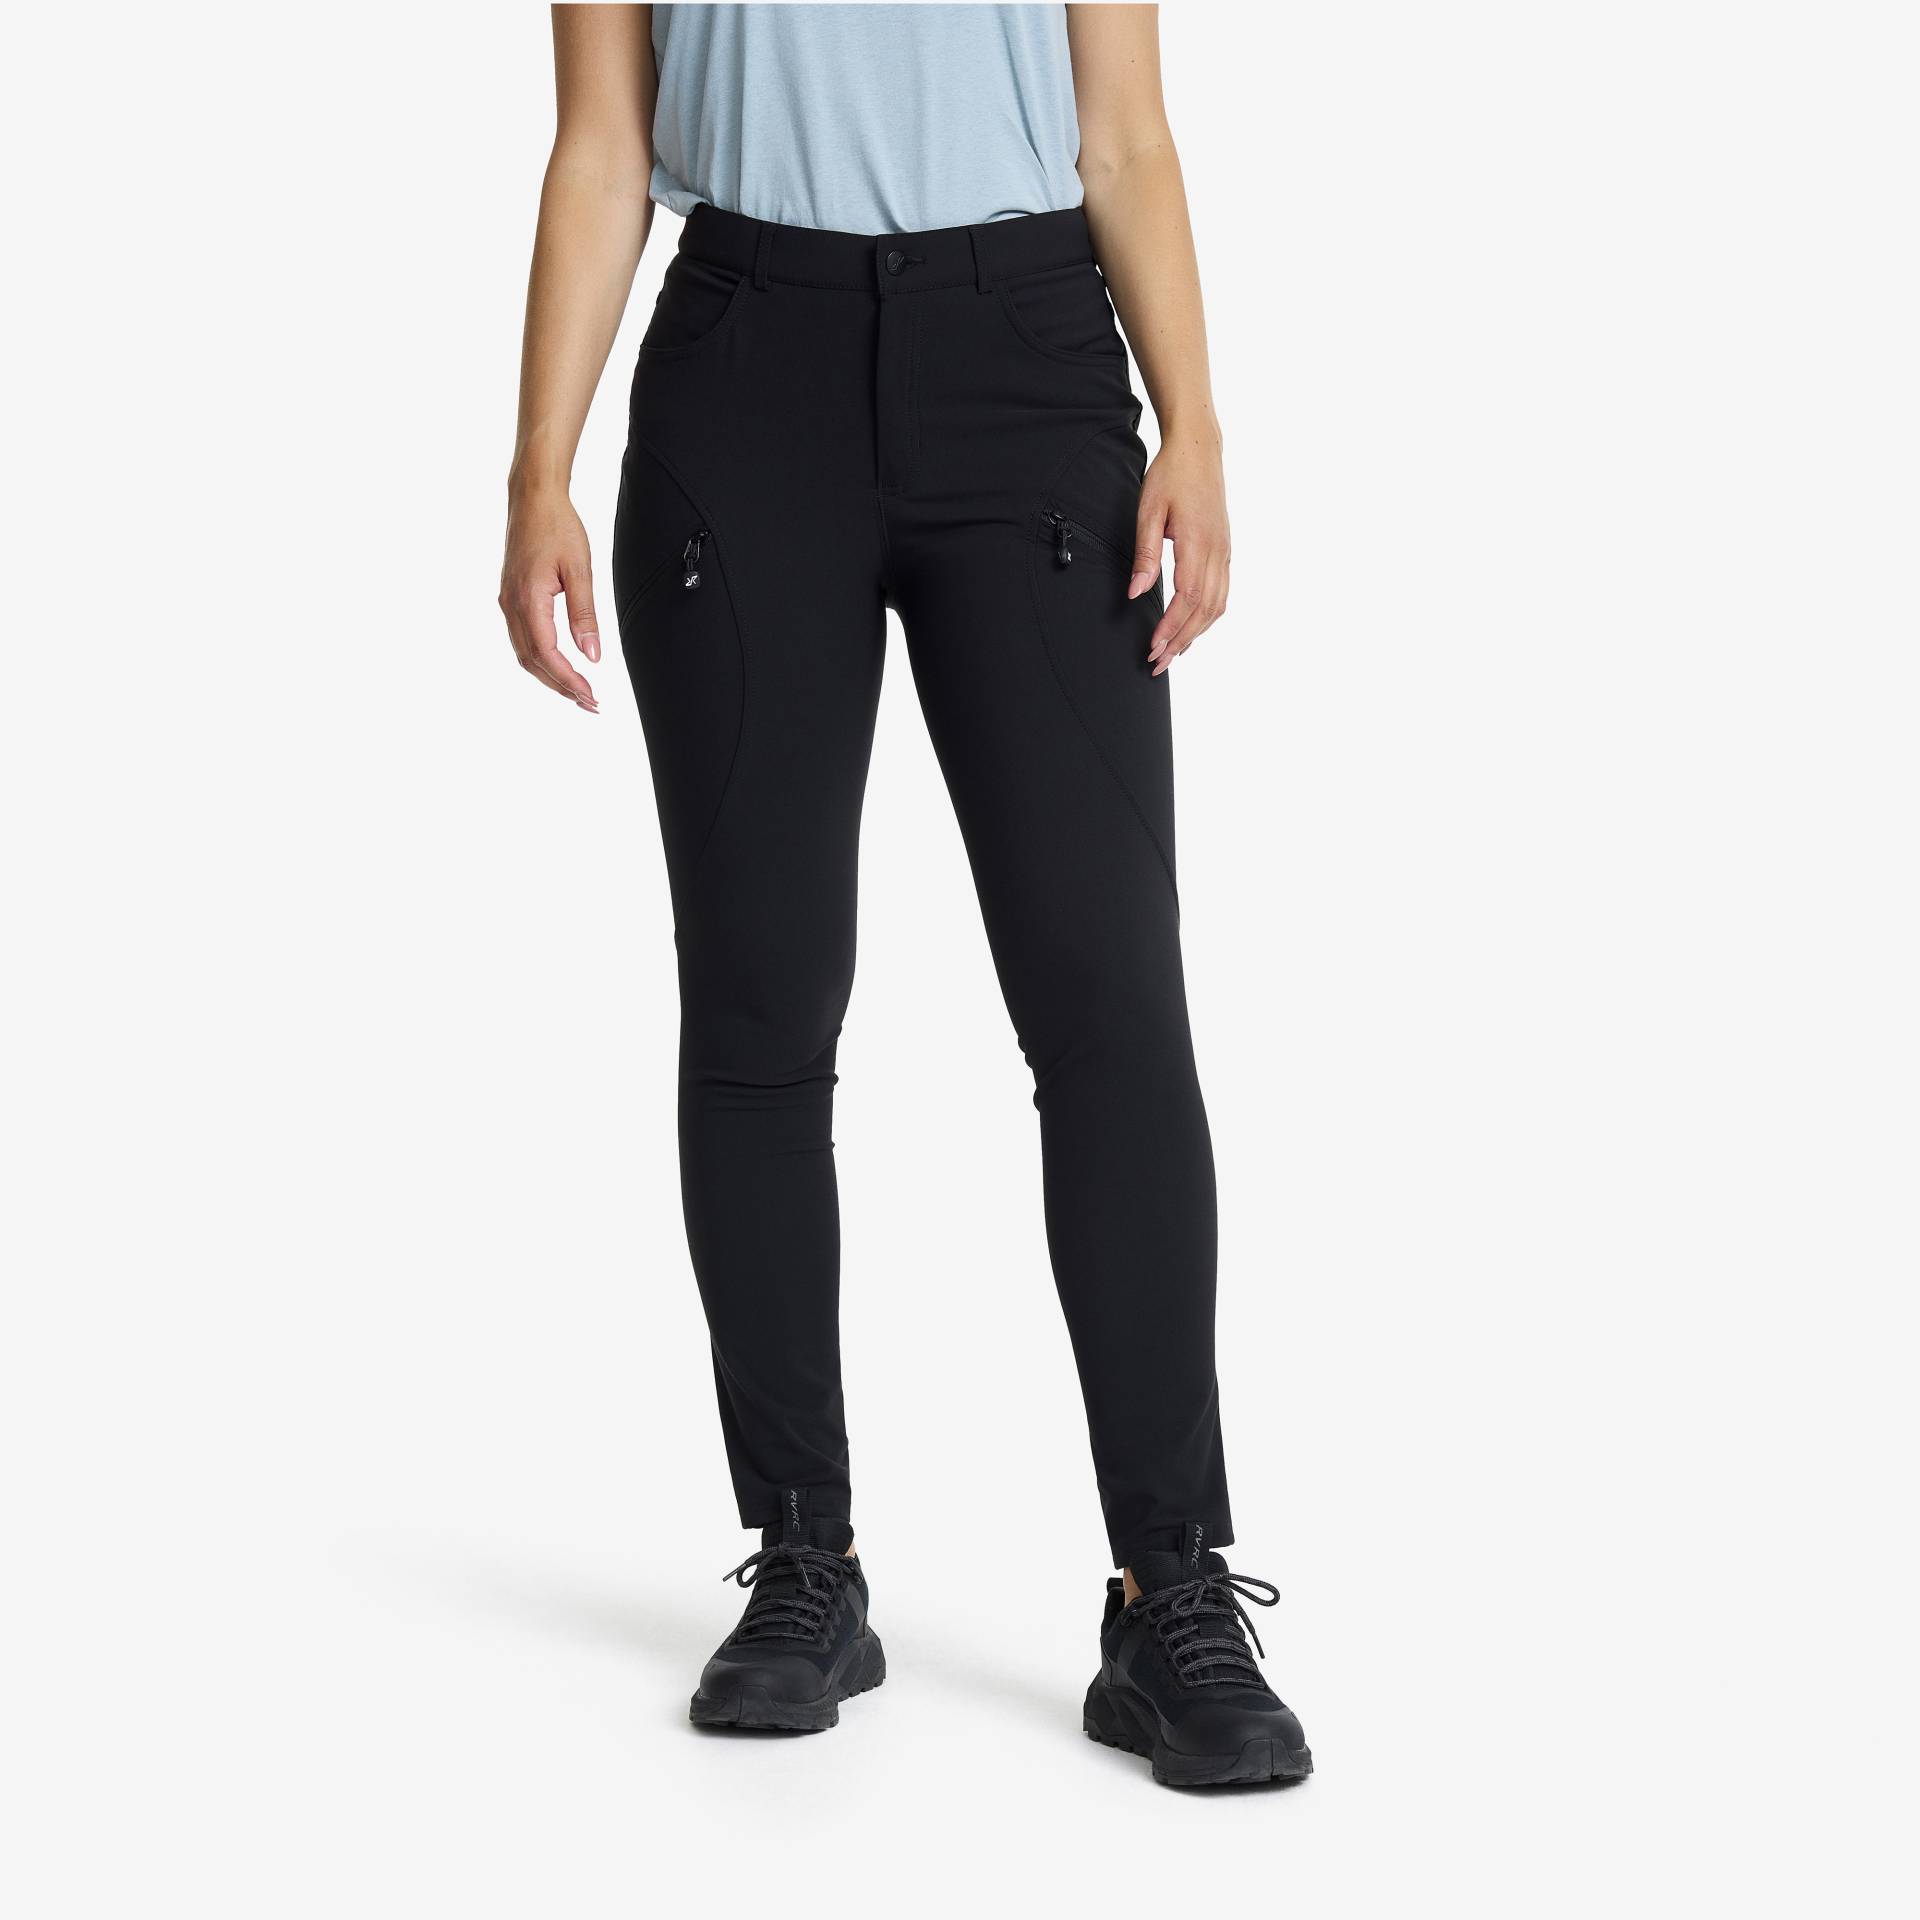 Bouncer Highwaist Jeans Damen Black, Größe:XS - Outdoor-jeans von RevolutionRace